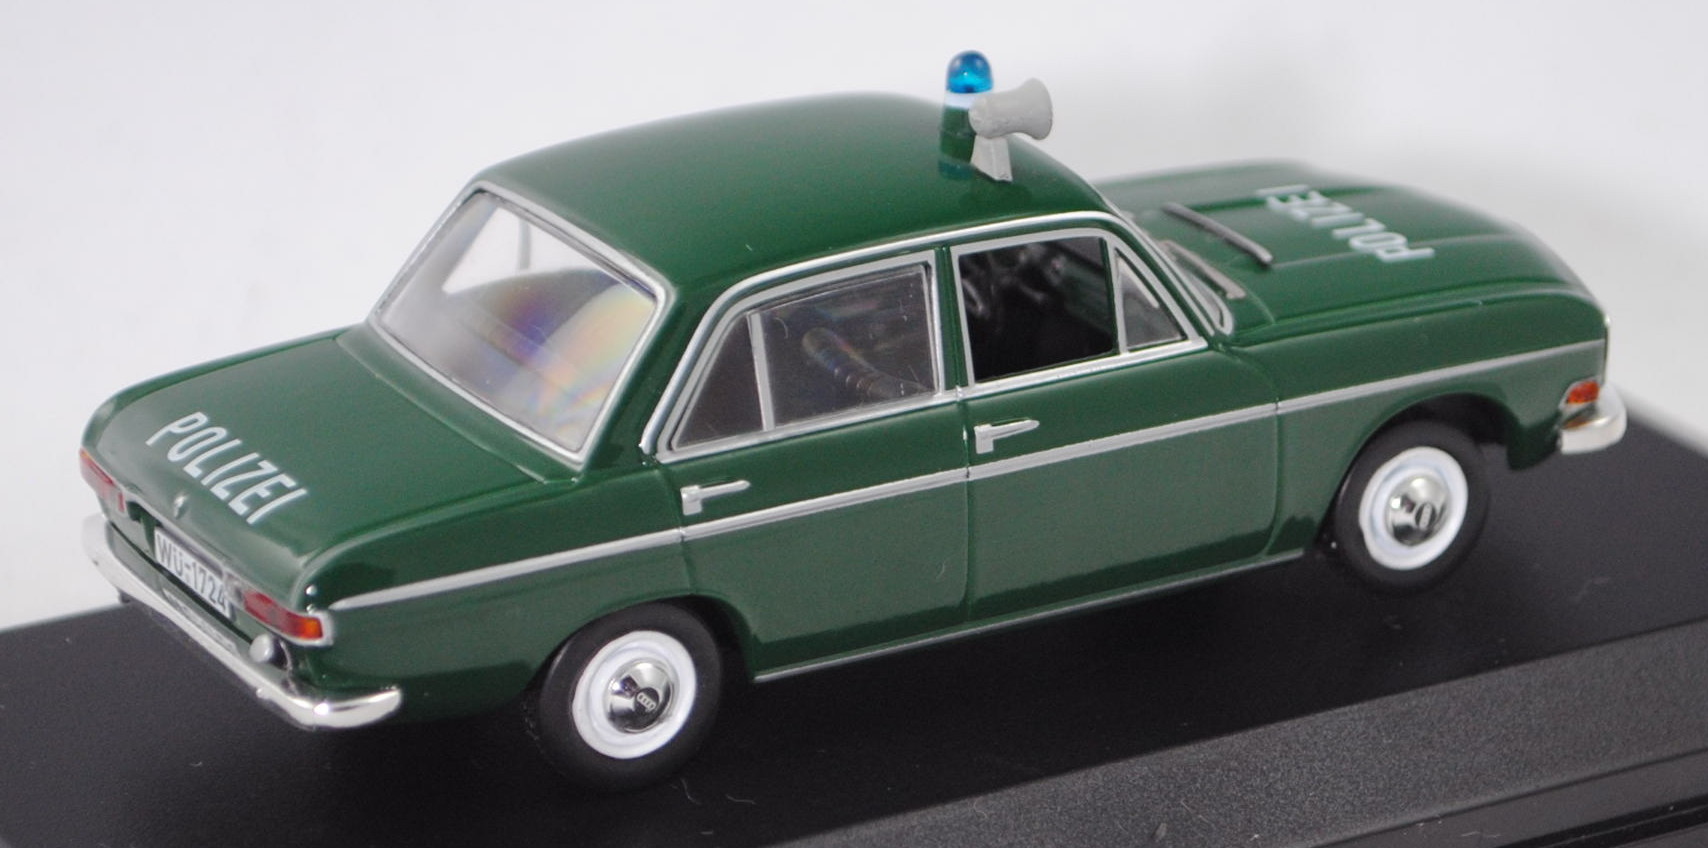 AUDI 72 POLIZEI 1965 NOREV 830024 1/43 VERT GREEN GRUN DEUTSCHE POLICE GERMAN